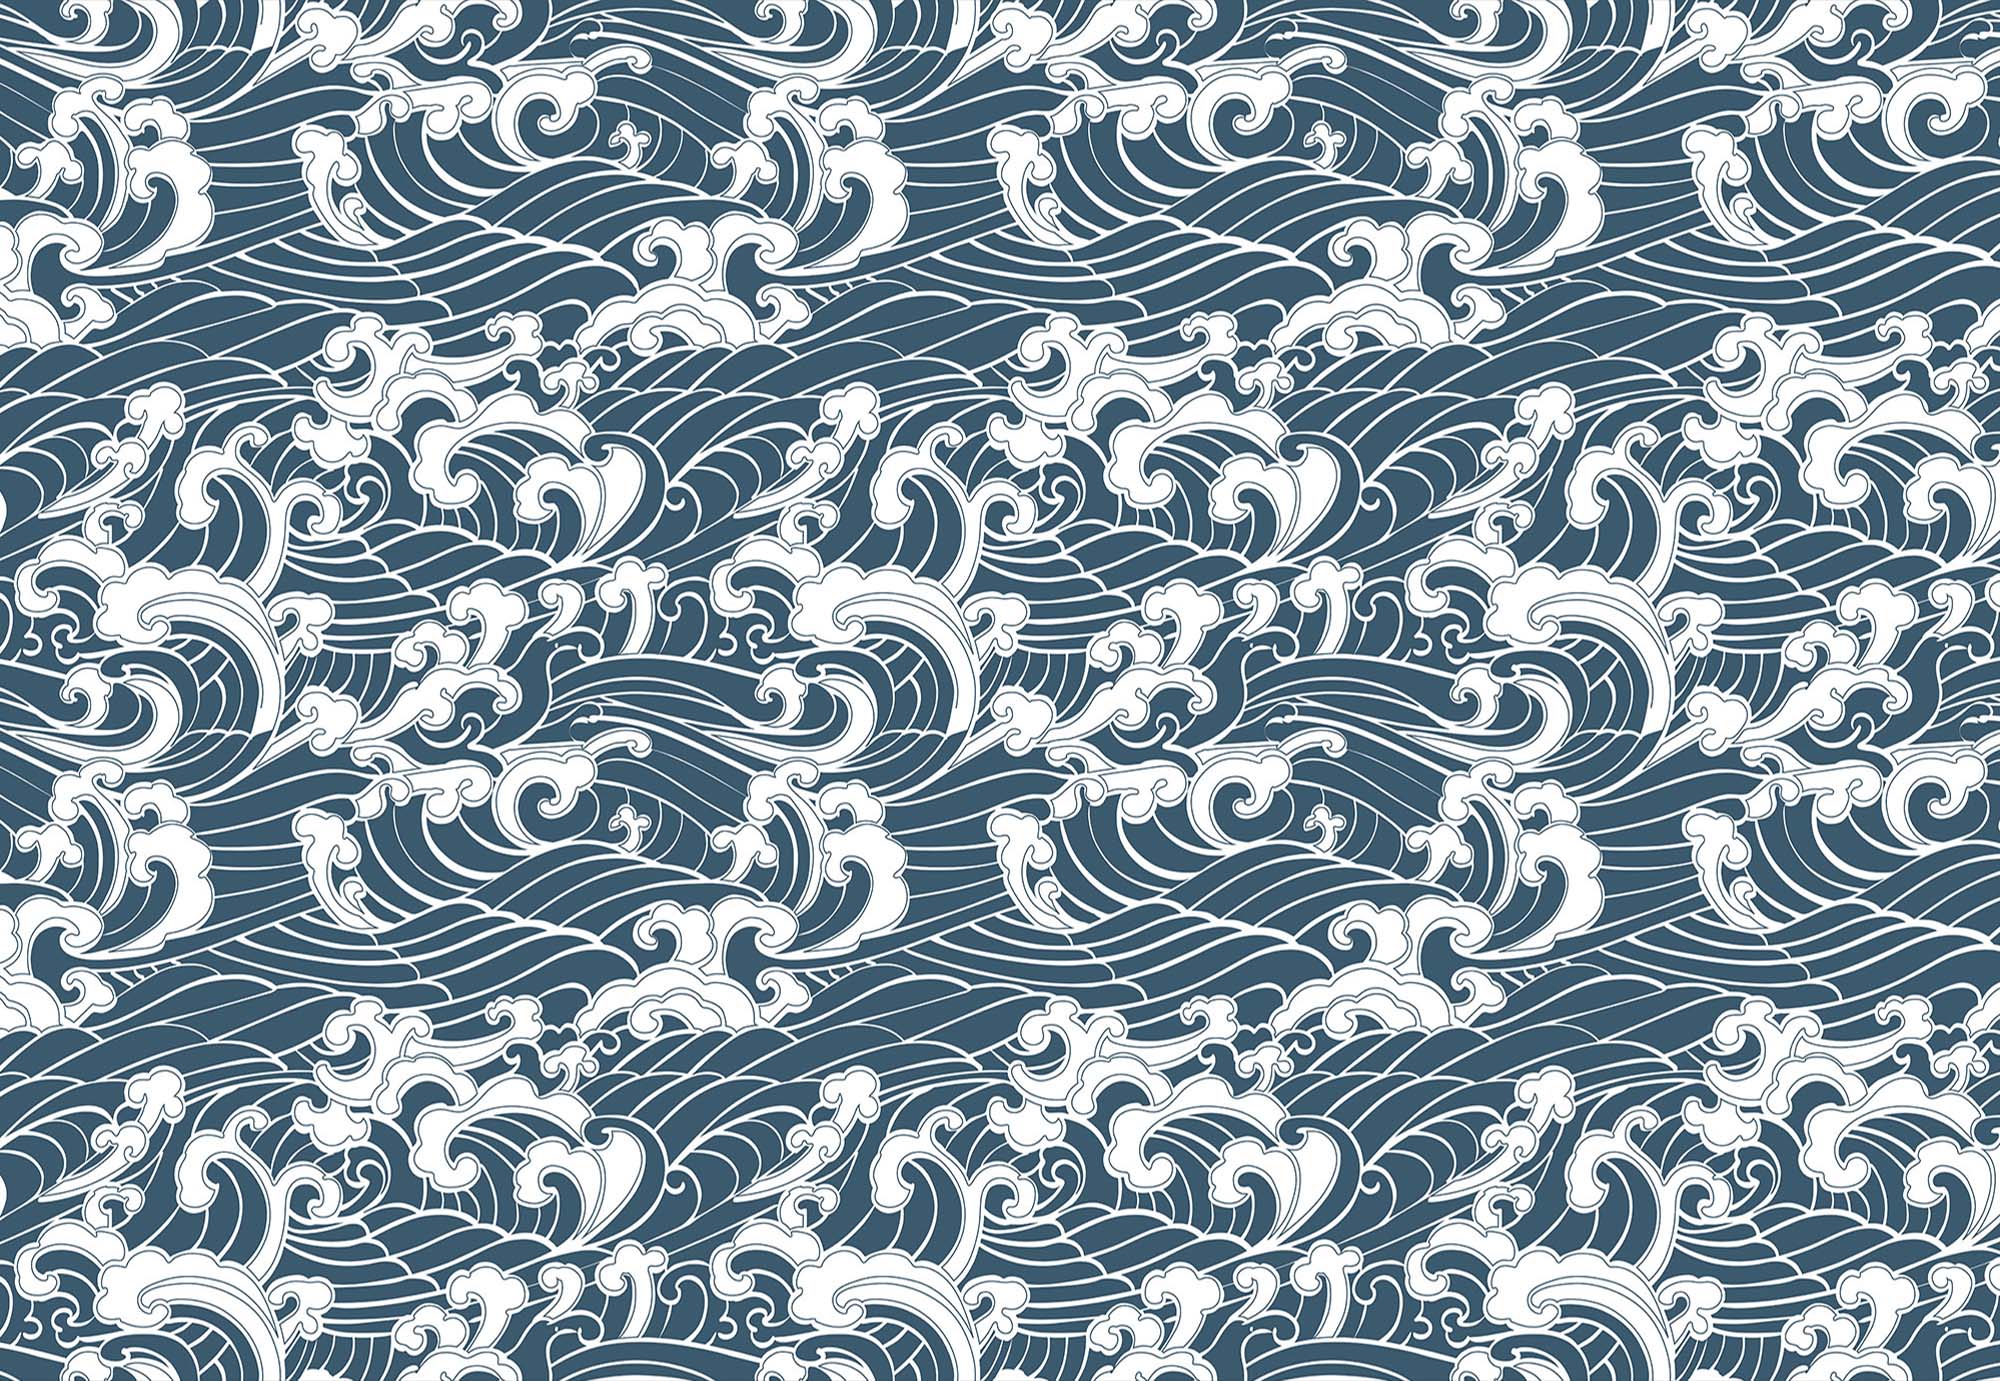 720 waves brush pattern.